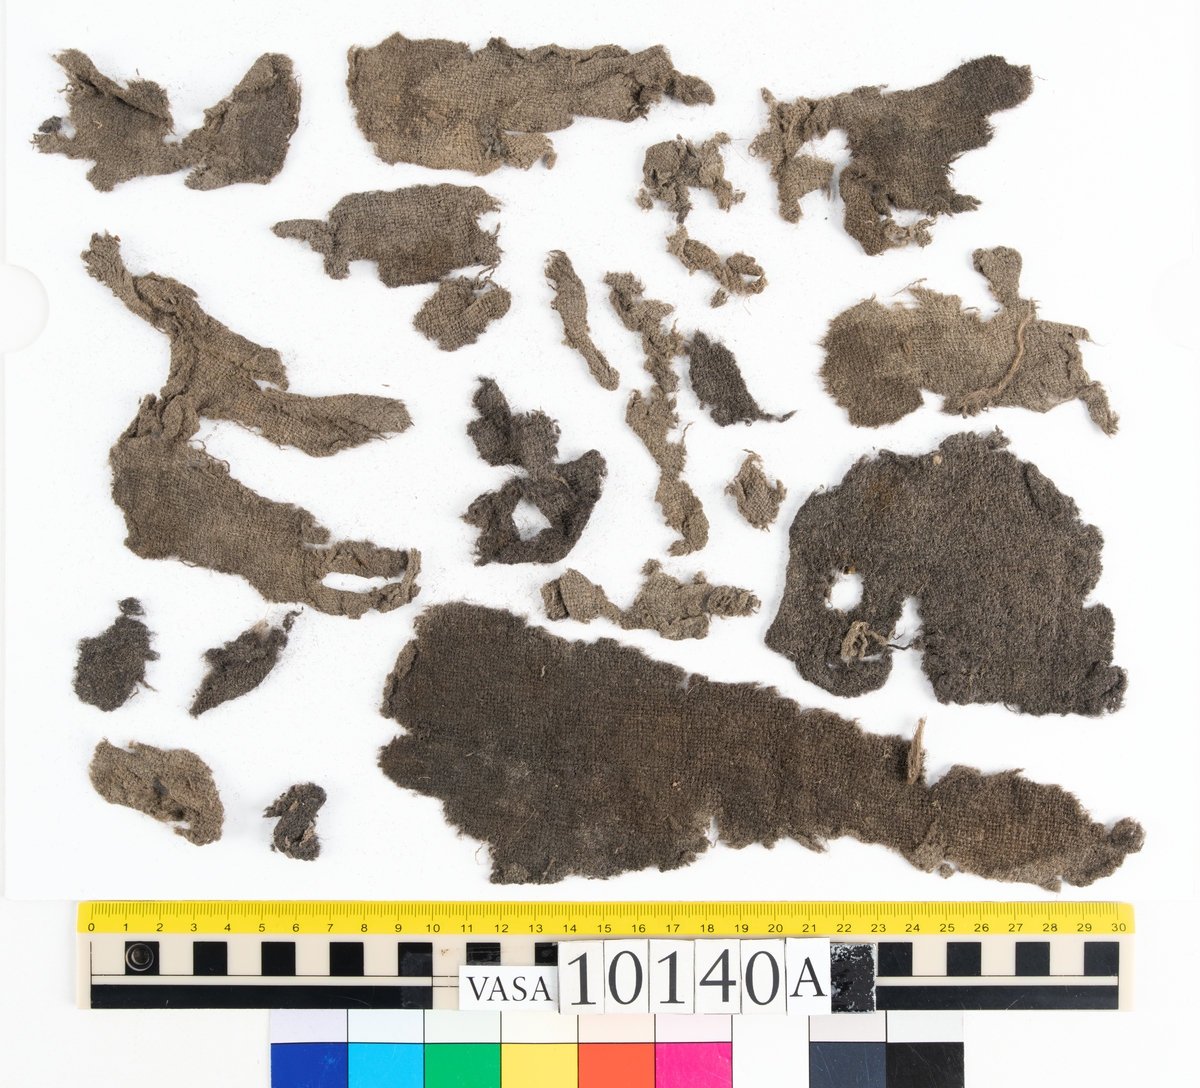 I styrplikten på styrbord sida i skeppet hittades mänskliga kvarlevor från "skelett F", även kallad Filip. I samband med skelettet hittades bland annat textilfynden 10140 och 10144 (tröja). Fyndnummer 10140 består av omkring 64 textilfragment av fyra olika tyger och ett mindre läderfragment fördelade i fyra askar (a-d). Samtliga textilier i fyndet är så pass fragmentariska att det inte i dagsläget går att avgöra vad det ursprungligen har varit. Däribland omkring 40 fragment av ull vävt i tuskaft där endast ett eller två fragment har spår av tillskärning och sömmar (10140a-b). Fyndet innehåller även små fragment av bastfibertråd och en textil där endast ena trådsystemet är bevarat där det är troligt att trådsystemet som idag är borta tidigare har bestått av bastfiber (10140b). I ask 10140c finns ett band av ull och silke vävt i tuskaft. Bandet är ca 22 mm. brett och 365 mm. långt och har flera runda rödorangea metallavtryck liknande de som finns på tröjfragmenten i fnr 10144.

För mer detaljerad information från textildokumentationen (år 2023) se länkade filer.